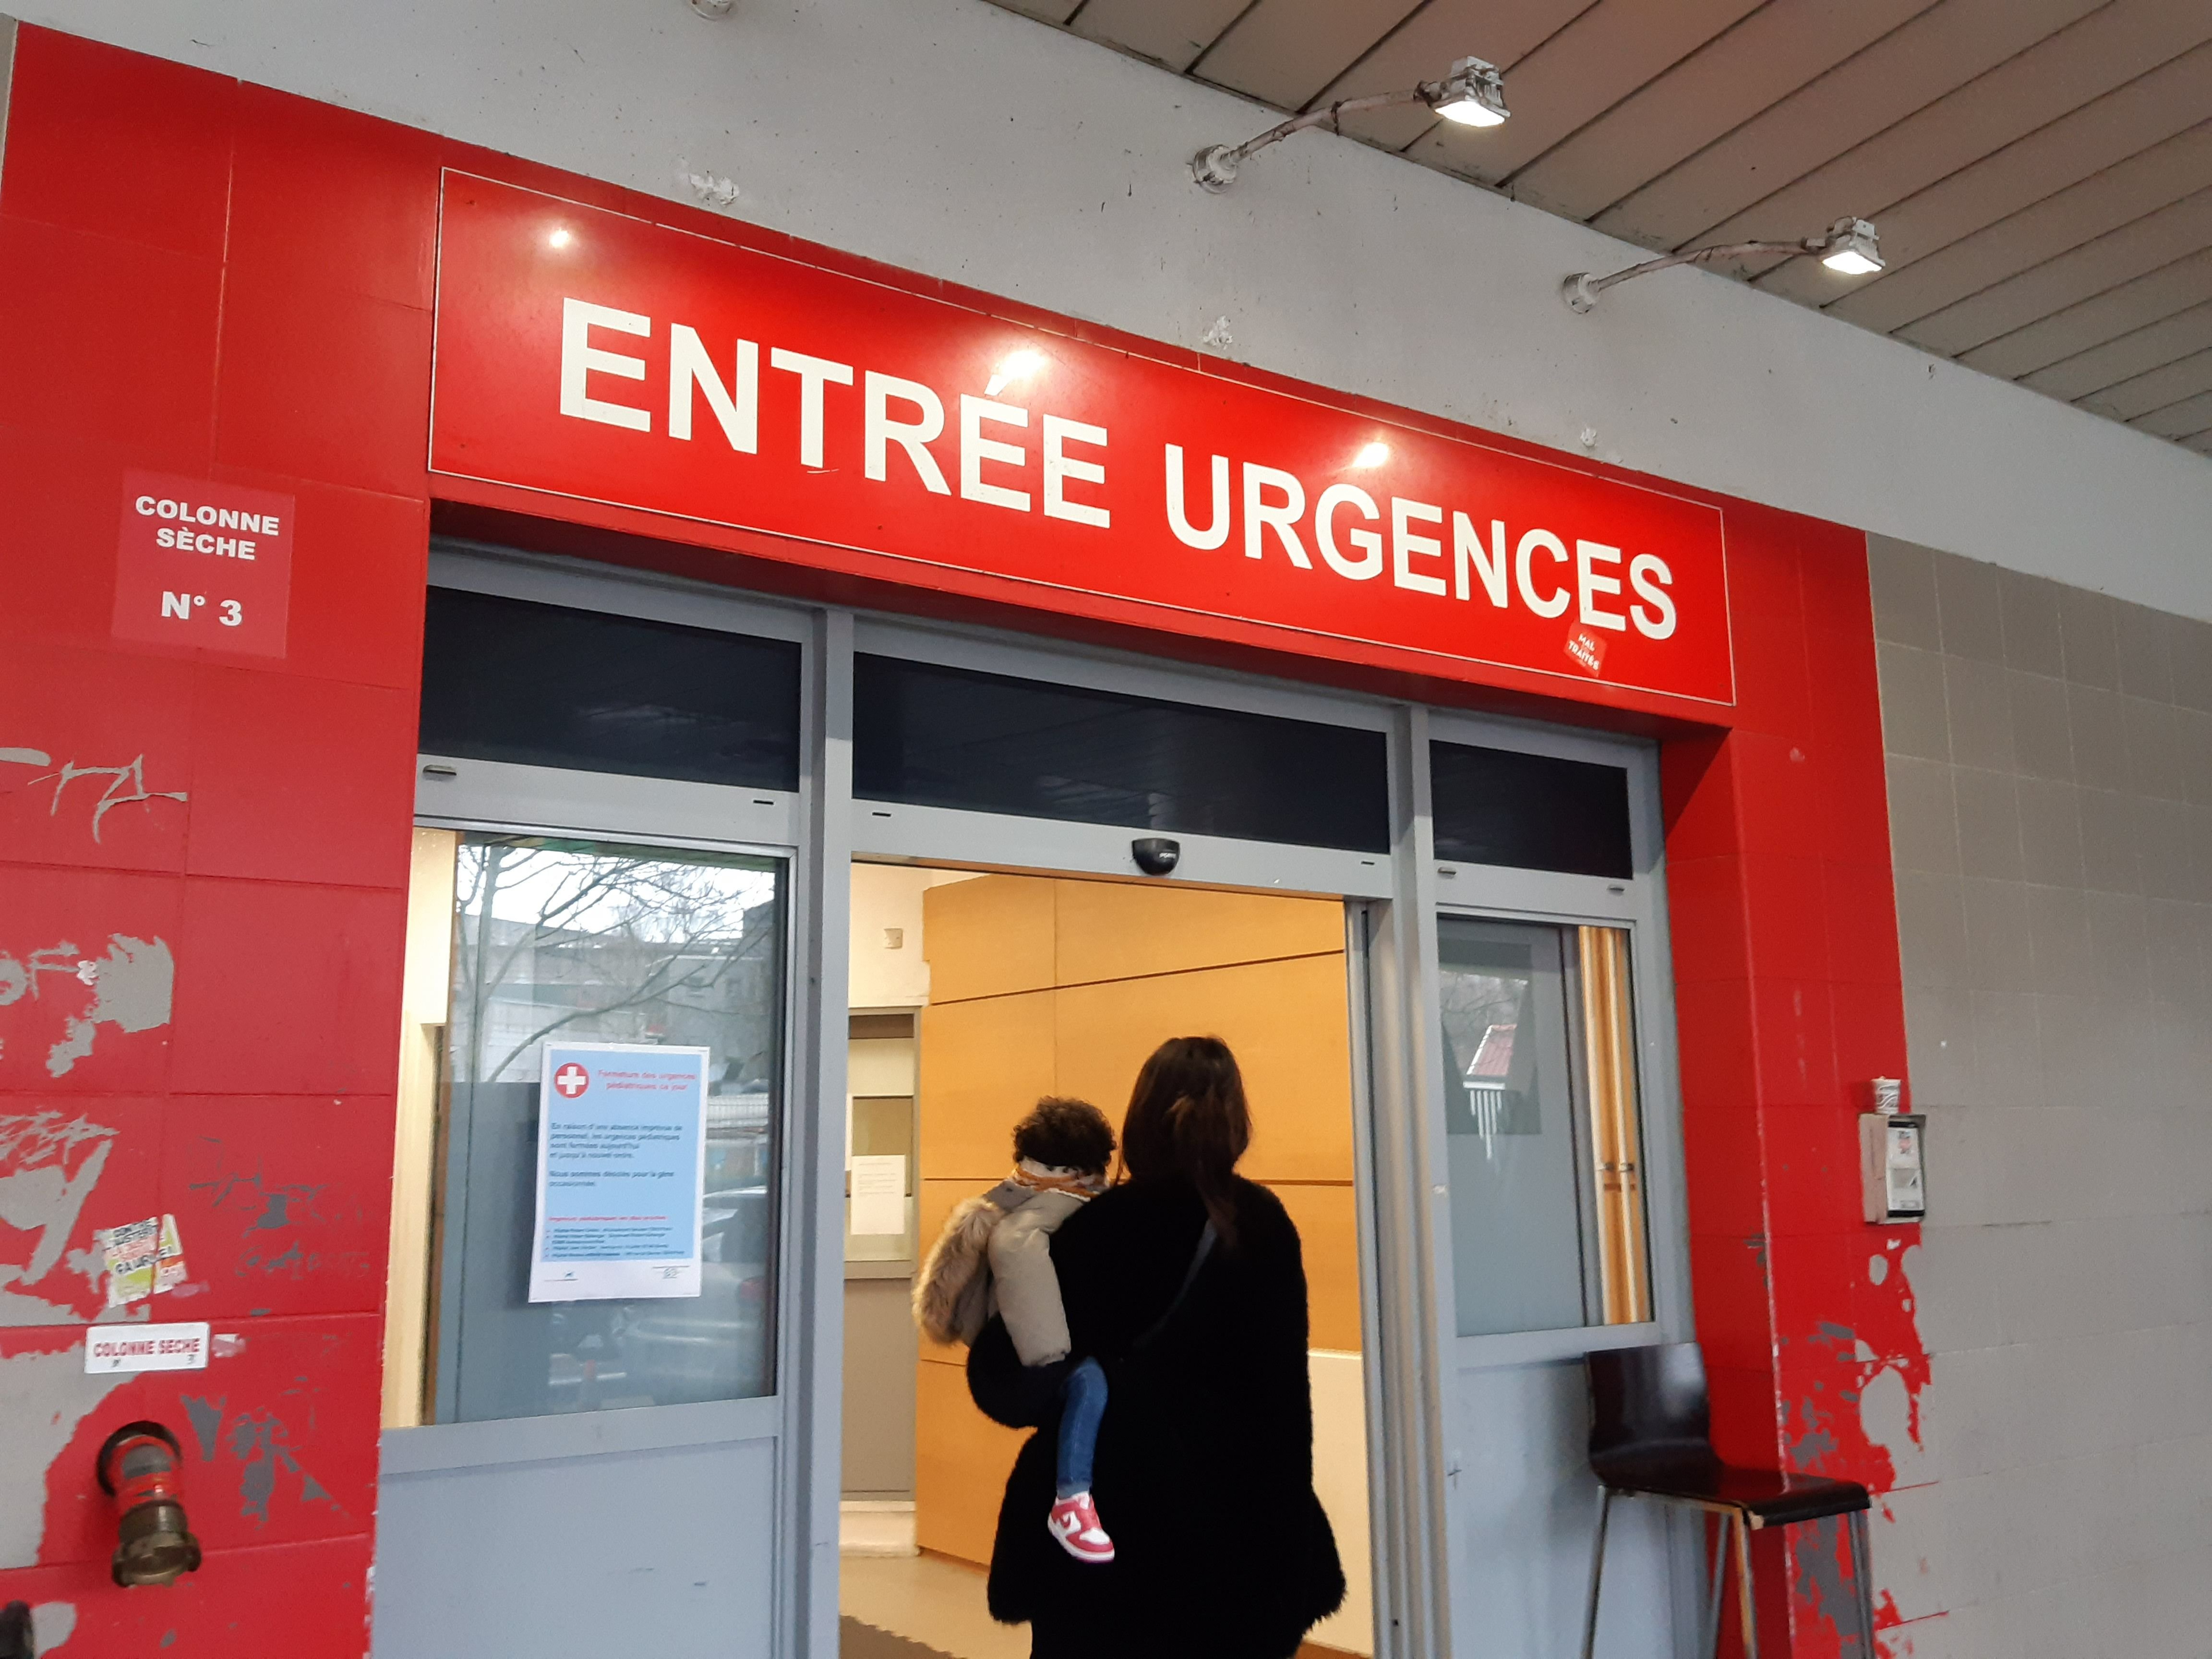 Saint-Denis (Seine-Saint-Denis), ce mardi. Les urgences pédiatriques de l'hôpital Delafontaine sont fermées depuis ce lundi matin, indiquent des panneaux à l'entrée. LP/E.M.